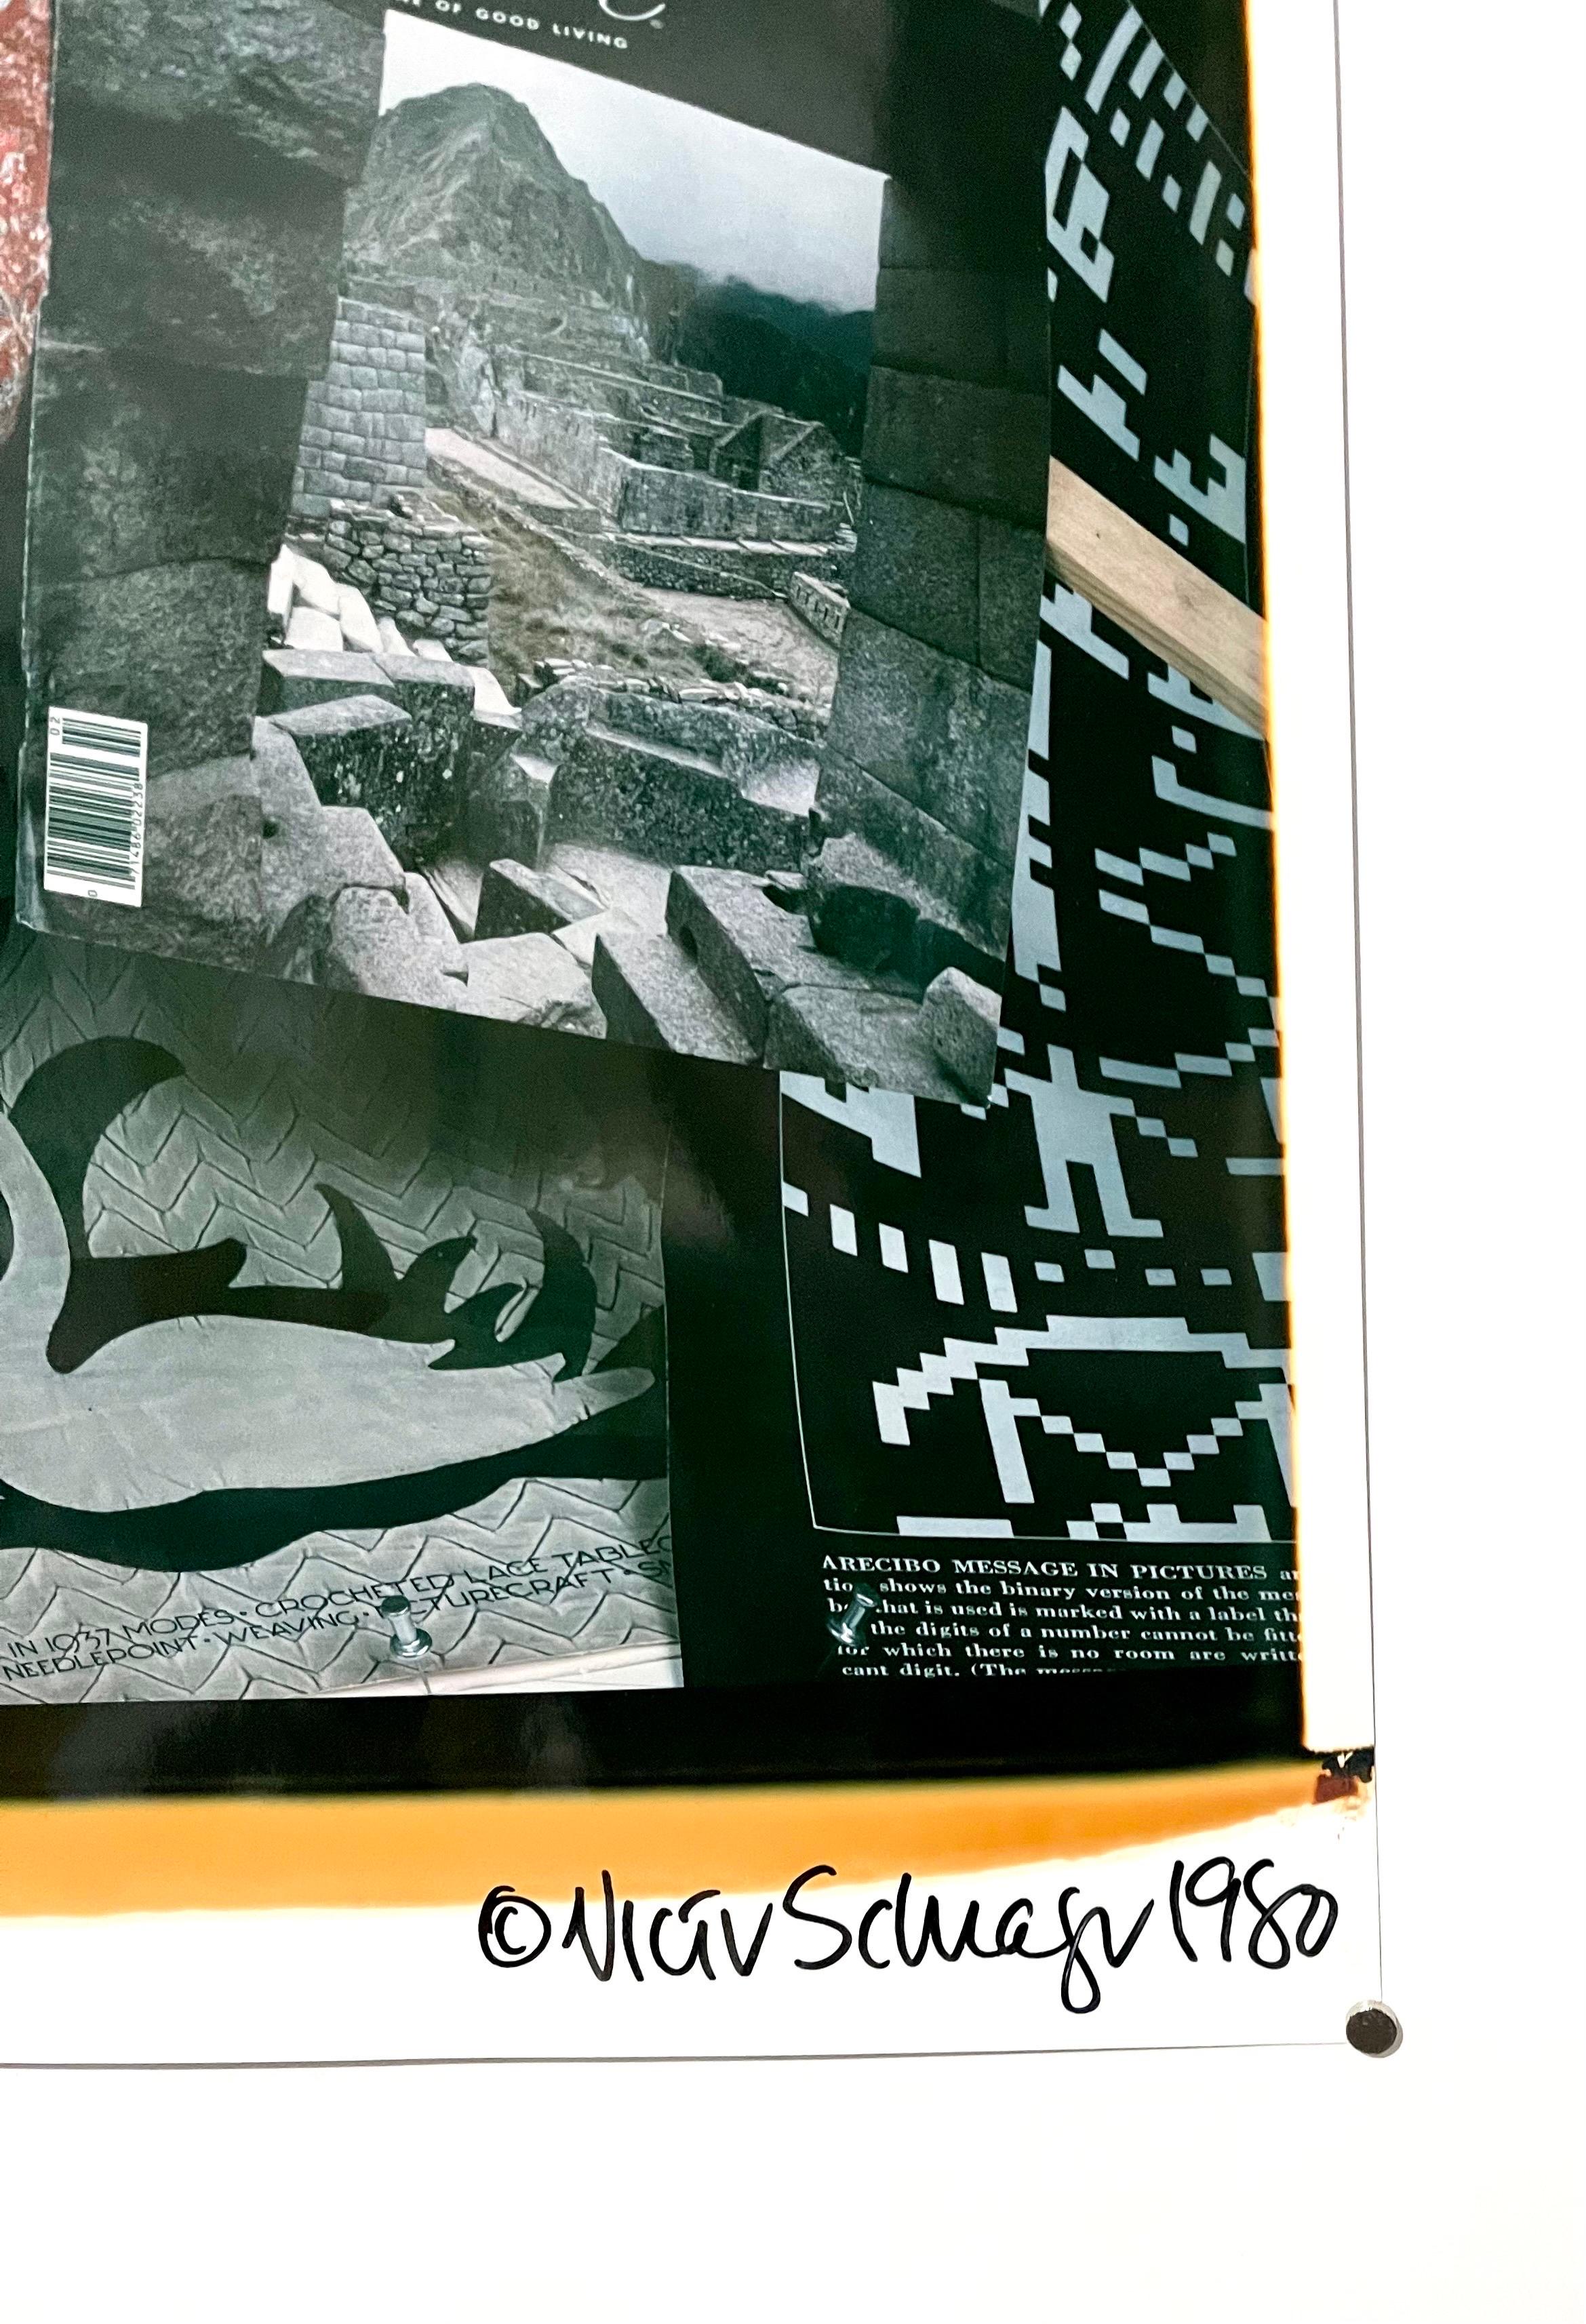 Victor Schrager
Titre : Olympia
Date : 1980
Épreuve originale Polaroid grand format (transfert par diffusion interne de colorant)
Localisation :	Cambridge Massachusetts États-Unis
Dimensions : Image : 27 1/2 x 20 1/2 in. (69.9 x 52.1 cm), Papier :